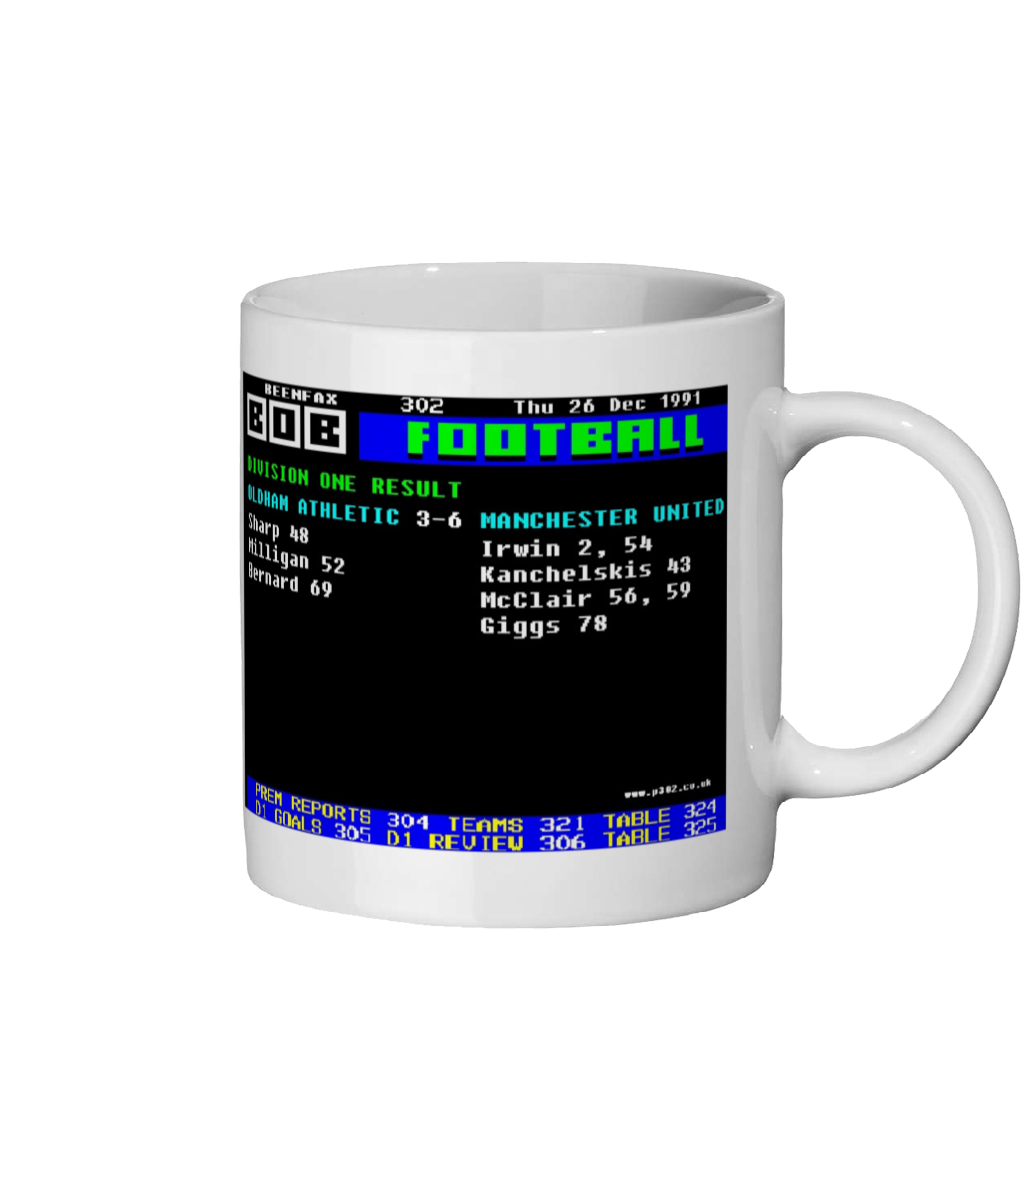 Oldham 3- 6 Manchester United 1991 Mug